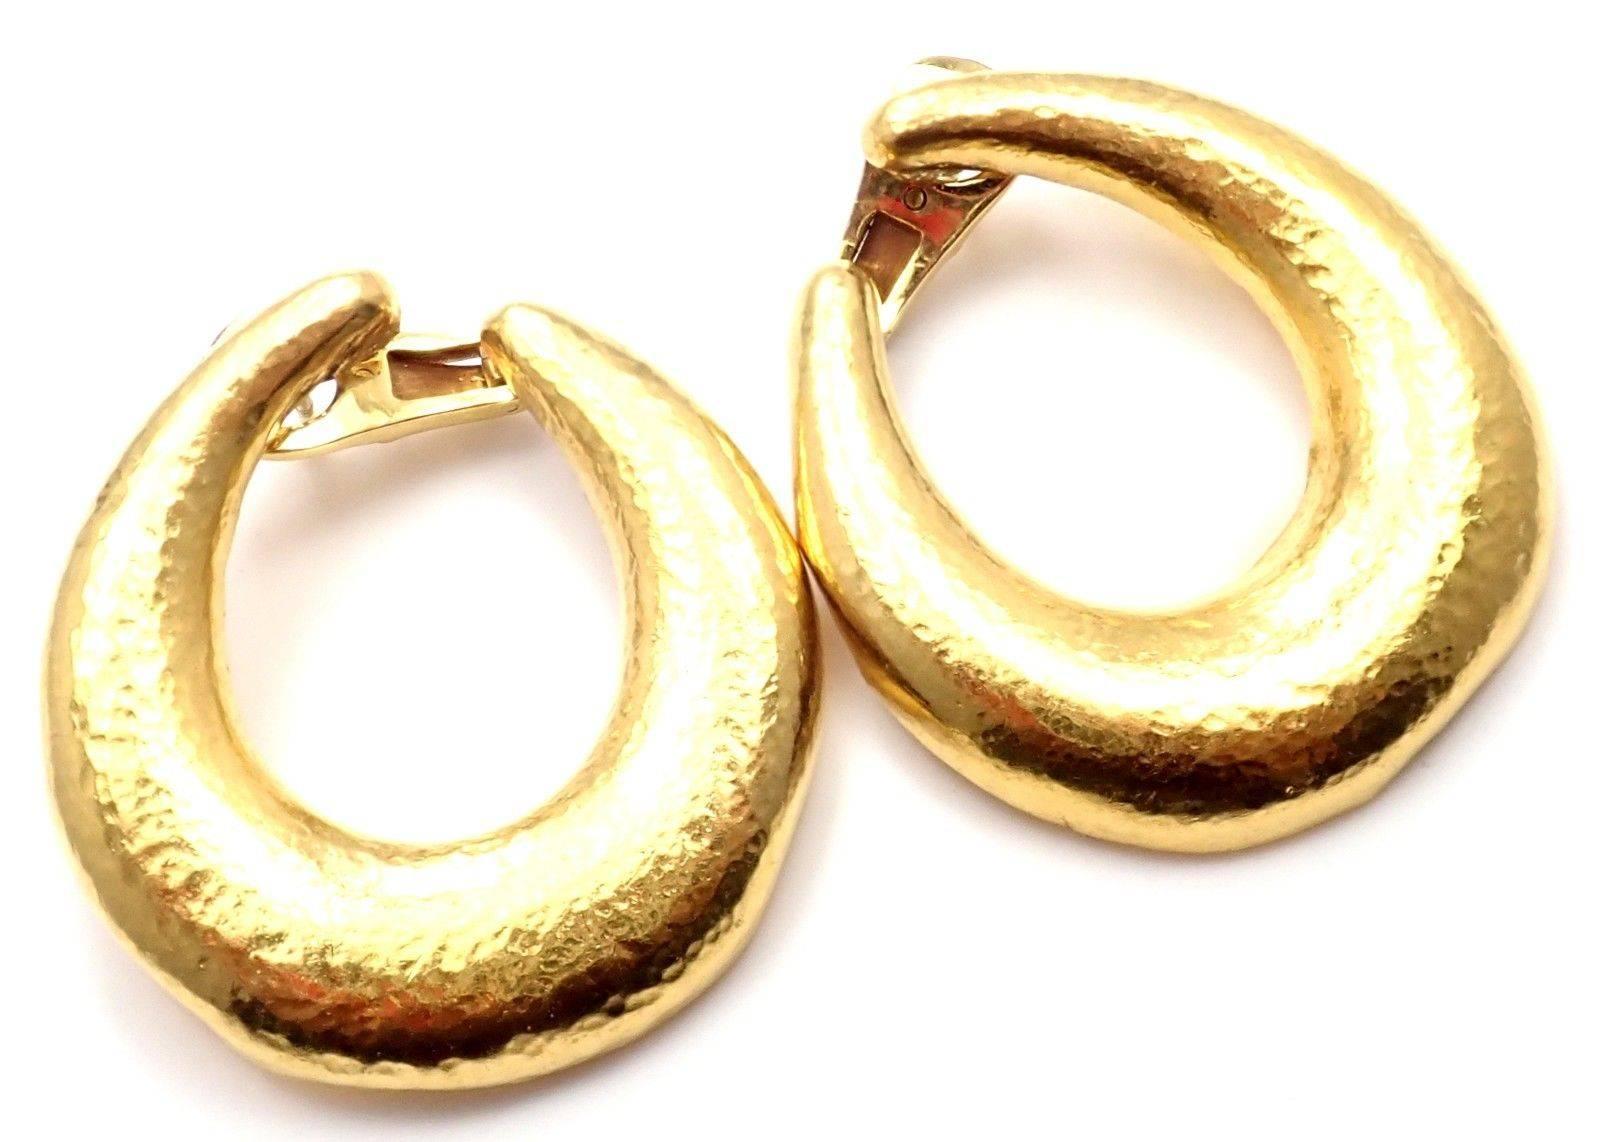 Zolotas Greece Large Yellow Gold Hoop Earrings 4